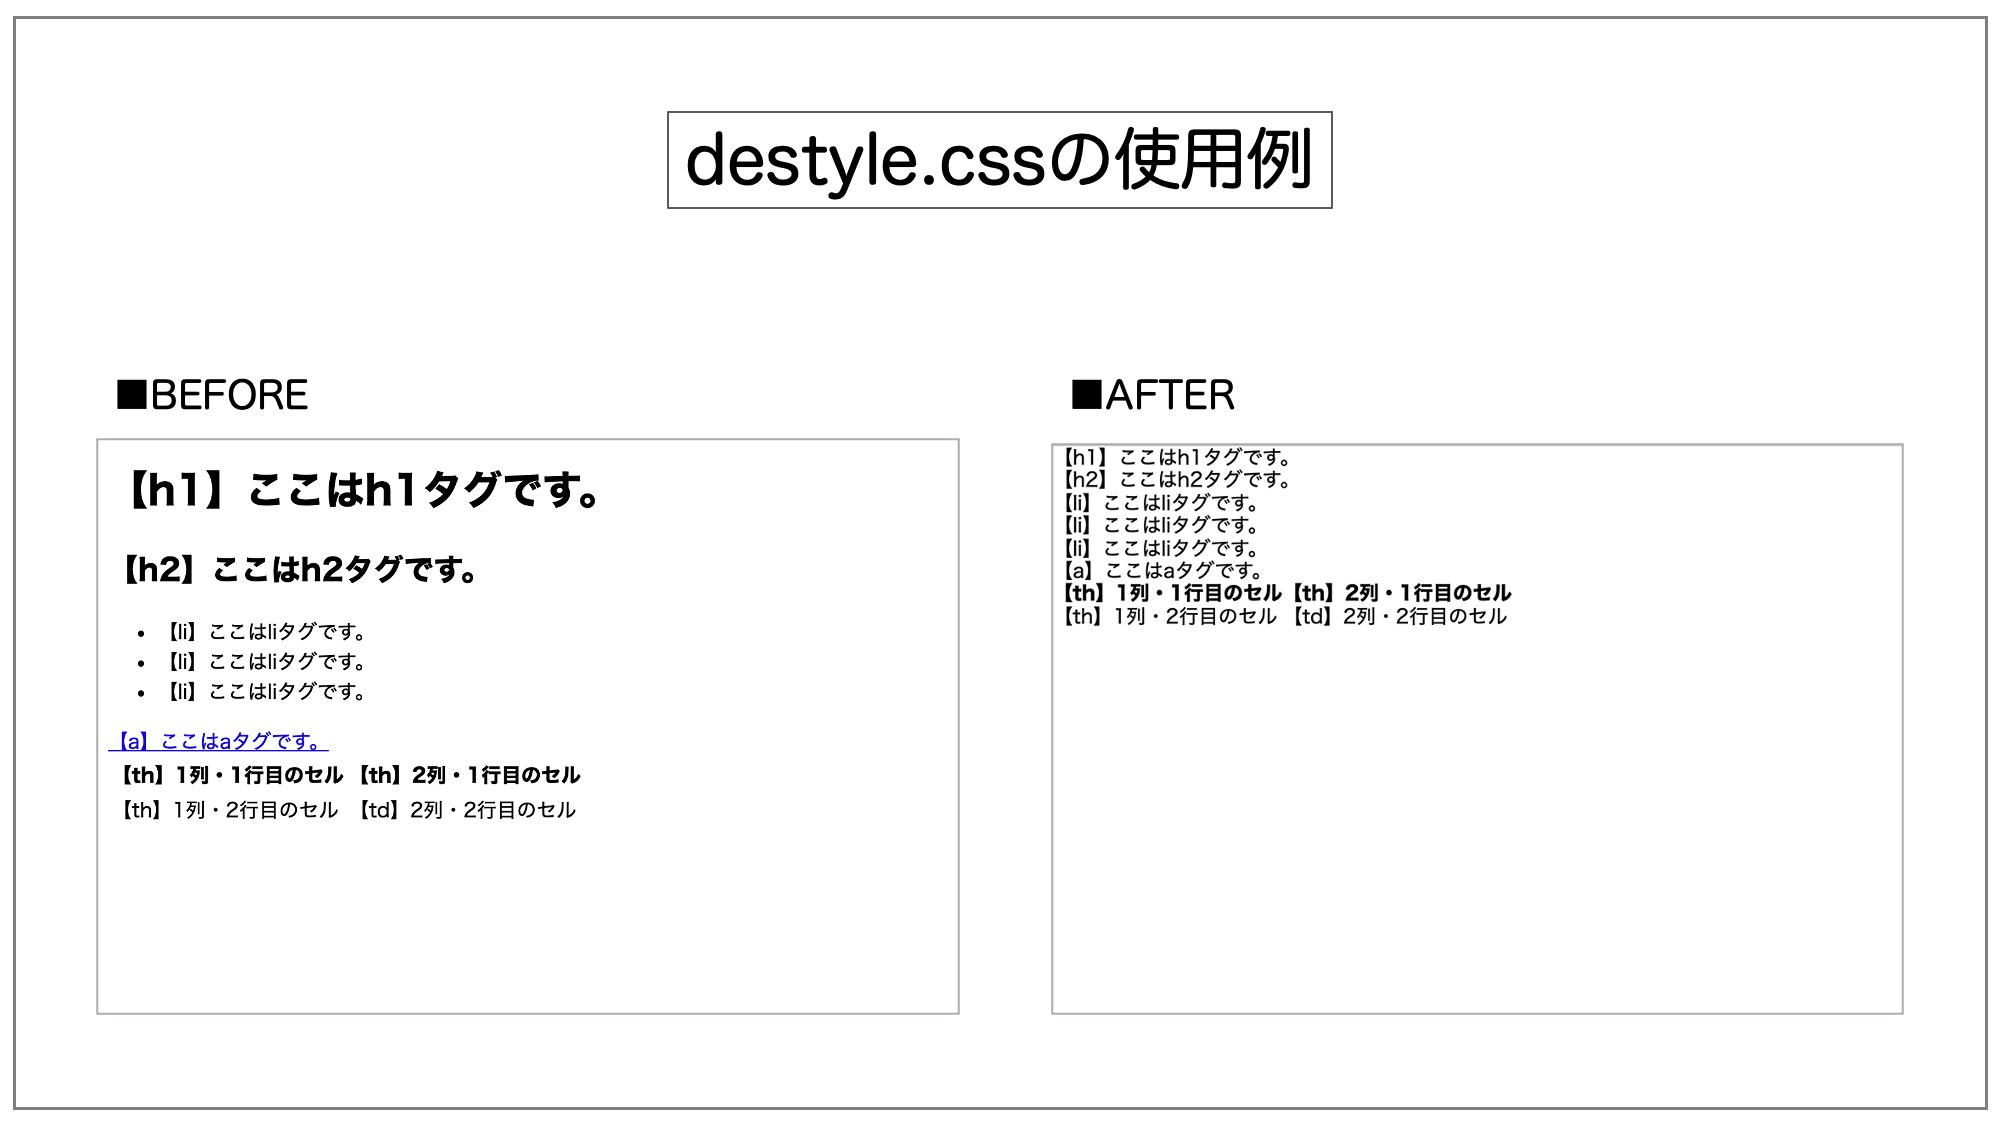 destyle.cssの使用例